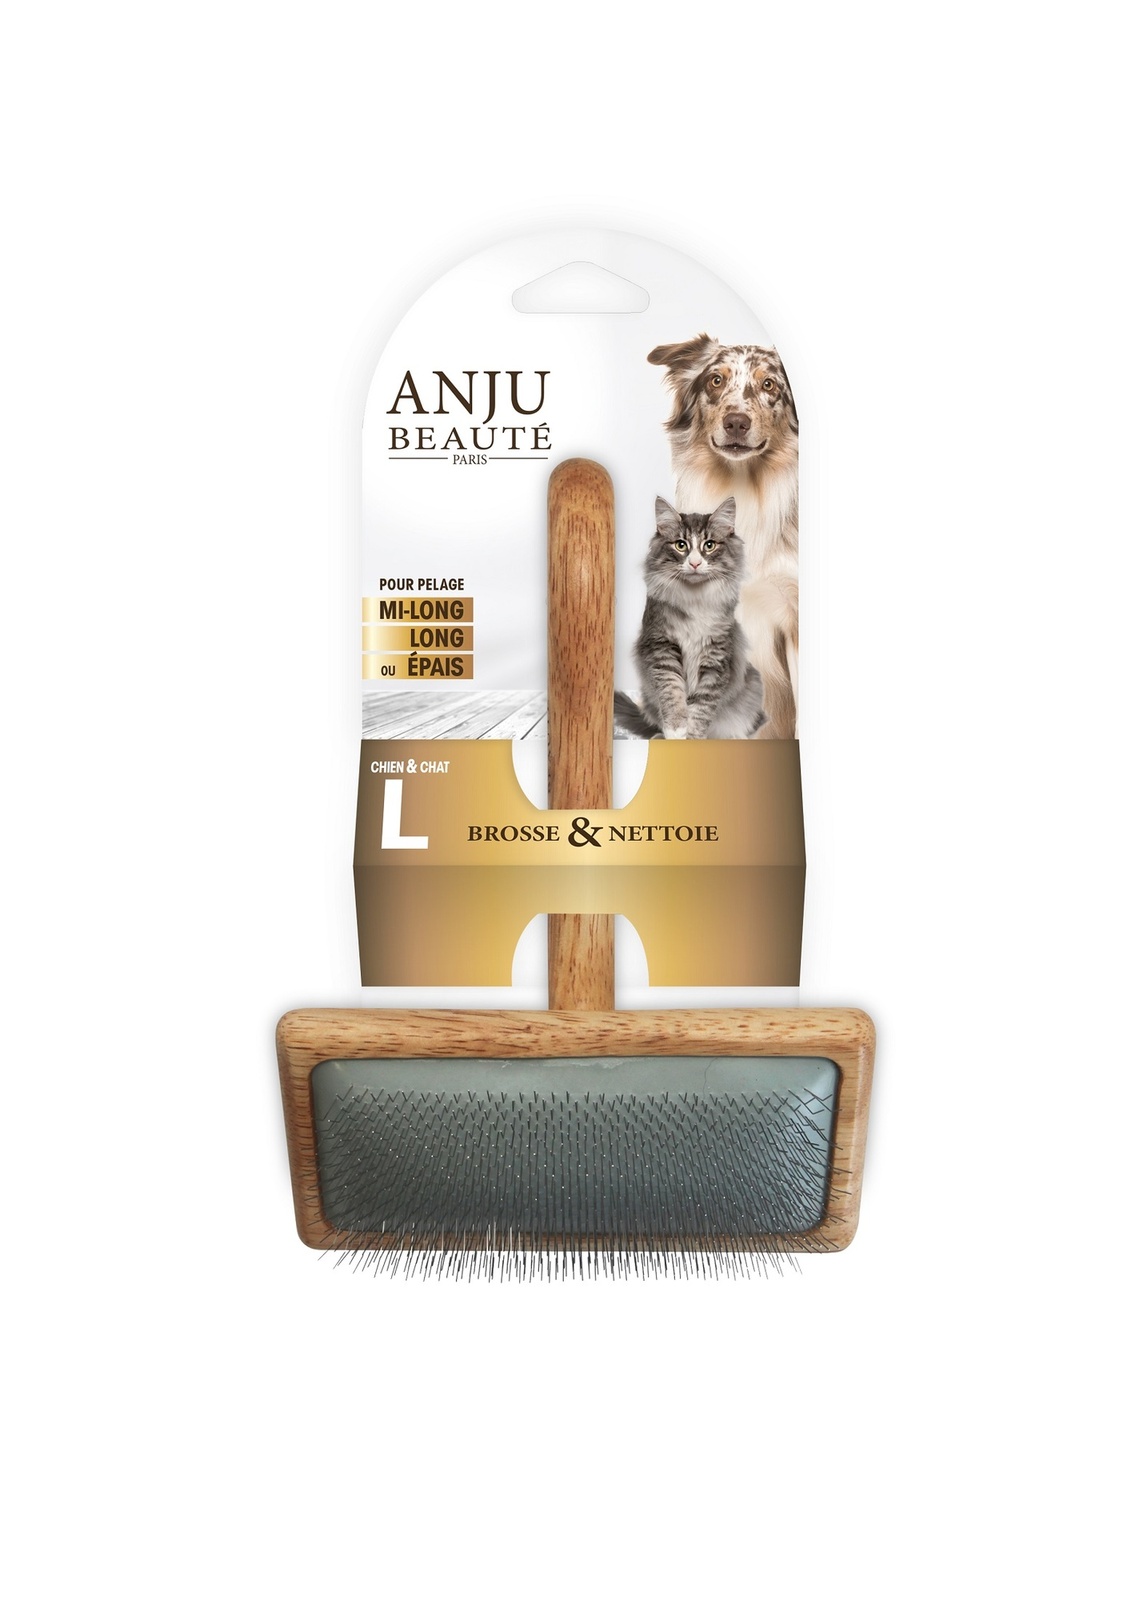 anju beaute anju beaute шампунь для кошек универсальный 200 мл 200 г Anju Beaute Anju Beaute пуходерка (L)